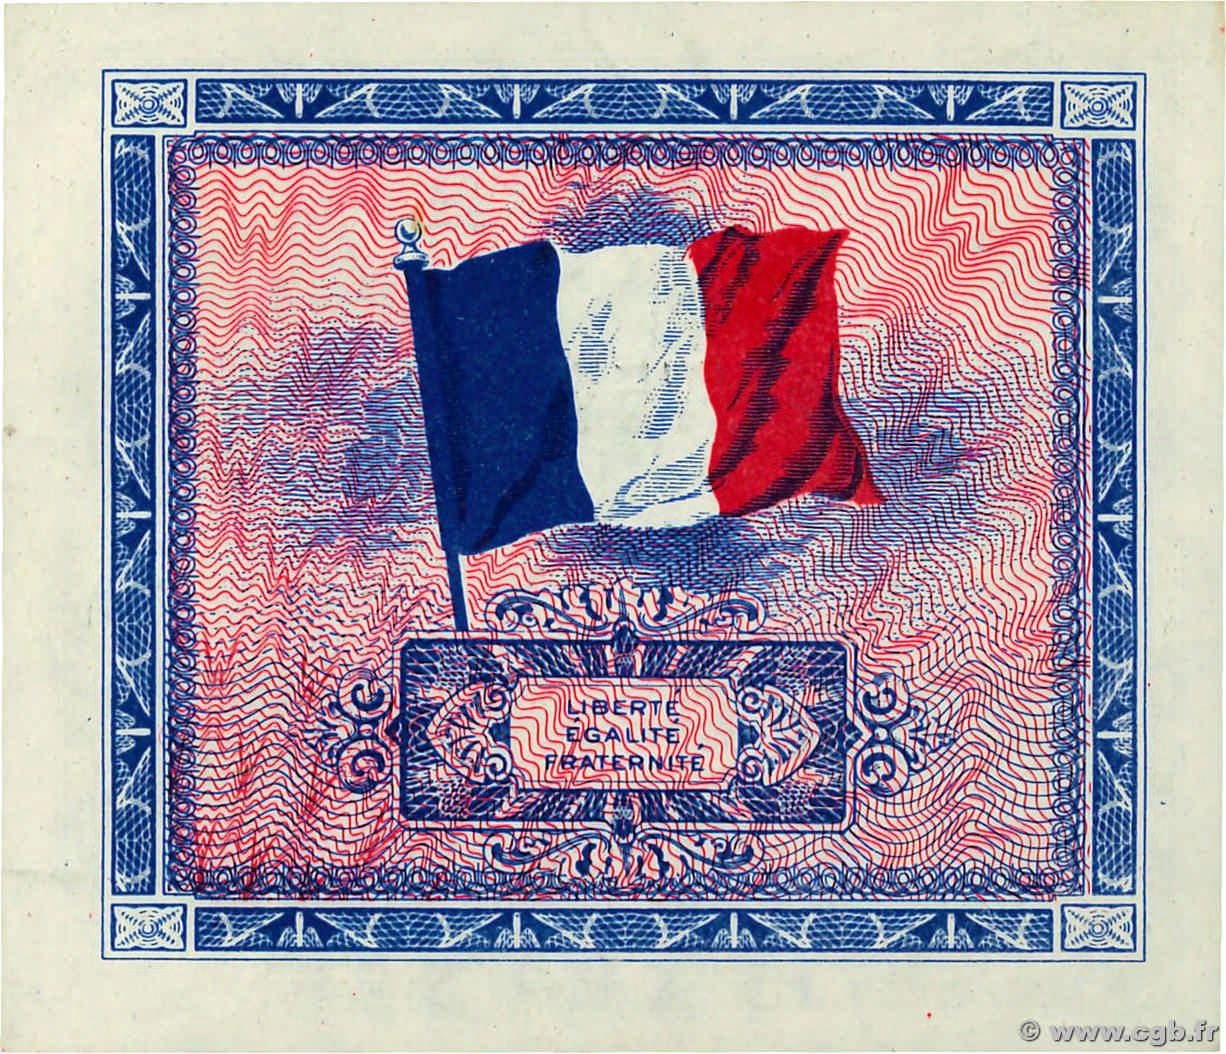 2 francs - Drapeau